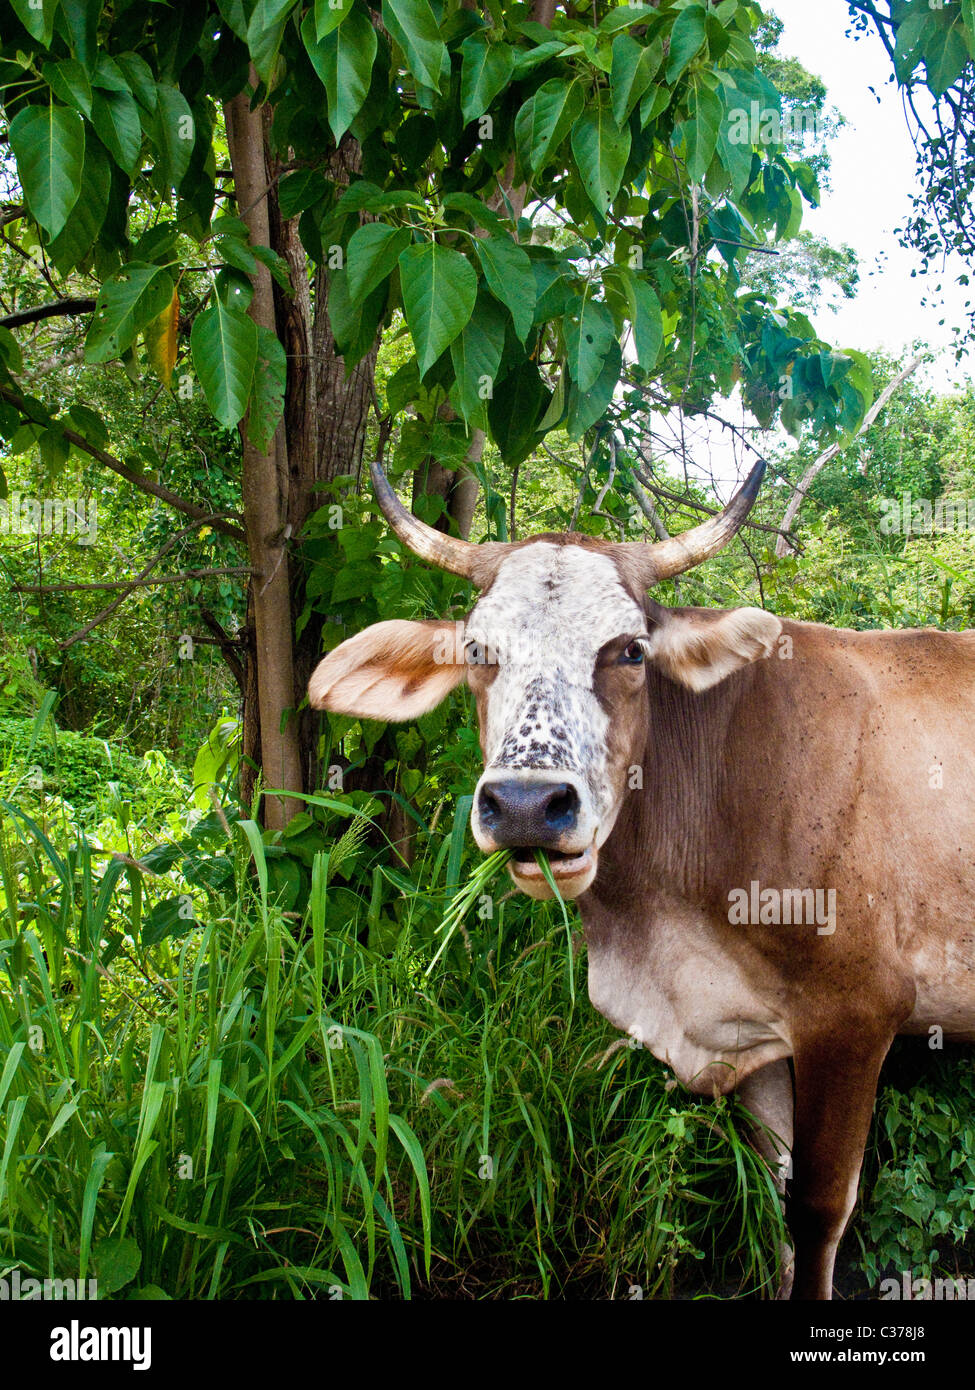 cow near jungle in mexico Stock Photo